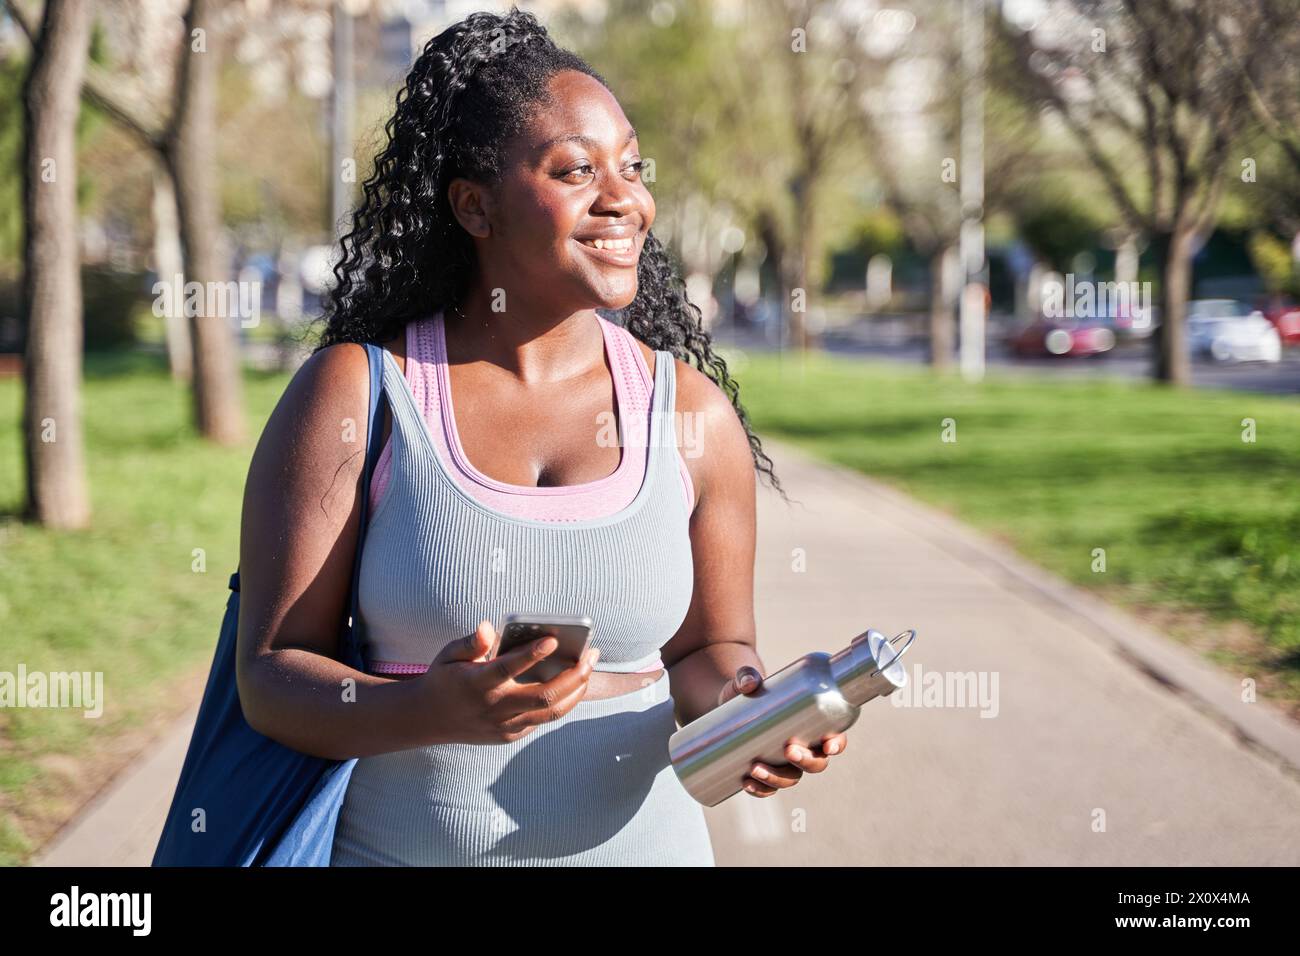 Junge afroamerikanische Frau, die in Sportbekleidung durch den Park geht und ein Smartphone in der einen Hand und eine Flasche Wasser in der anderen hält. Stockfoto